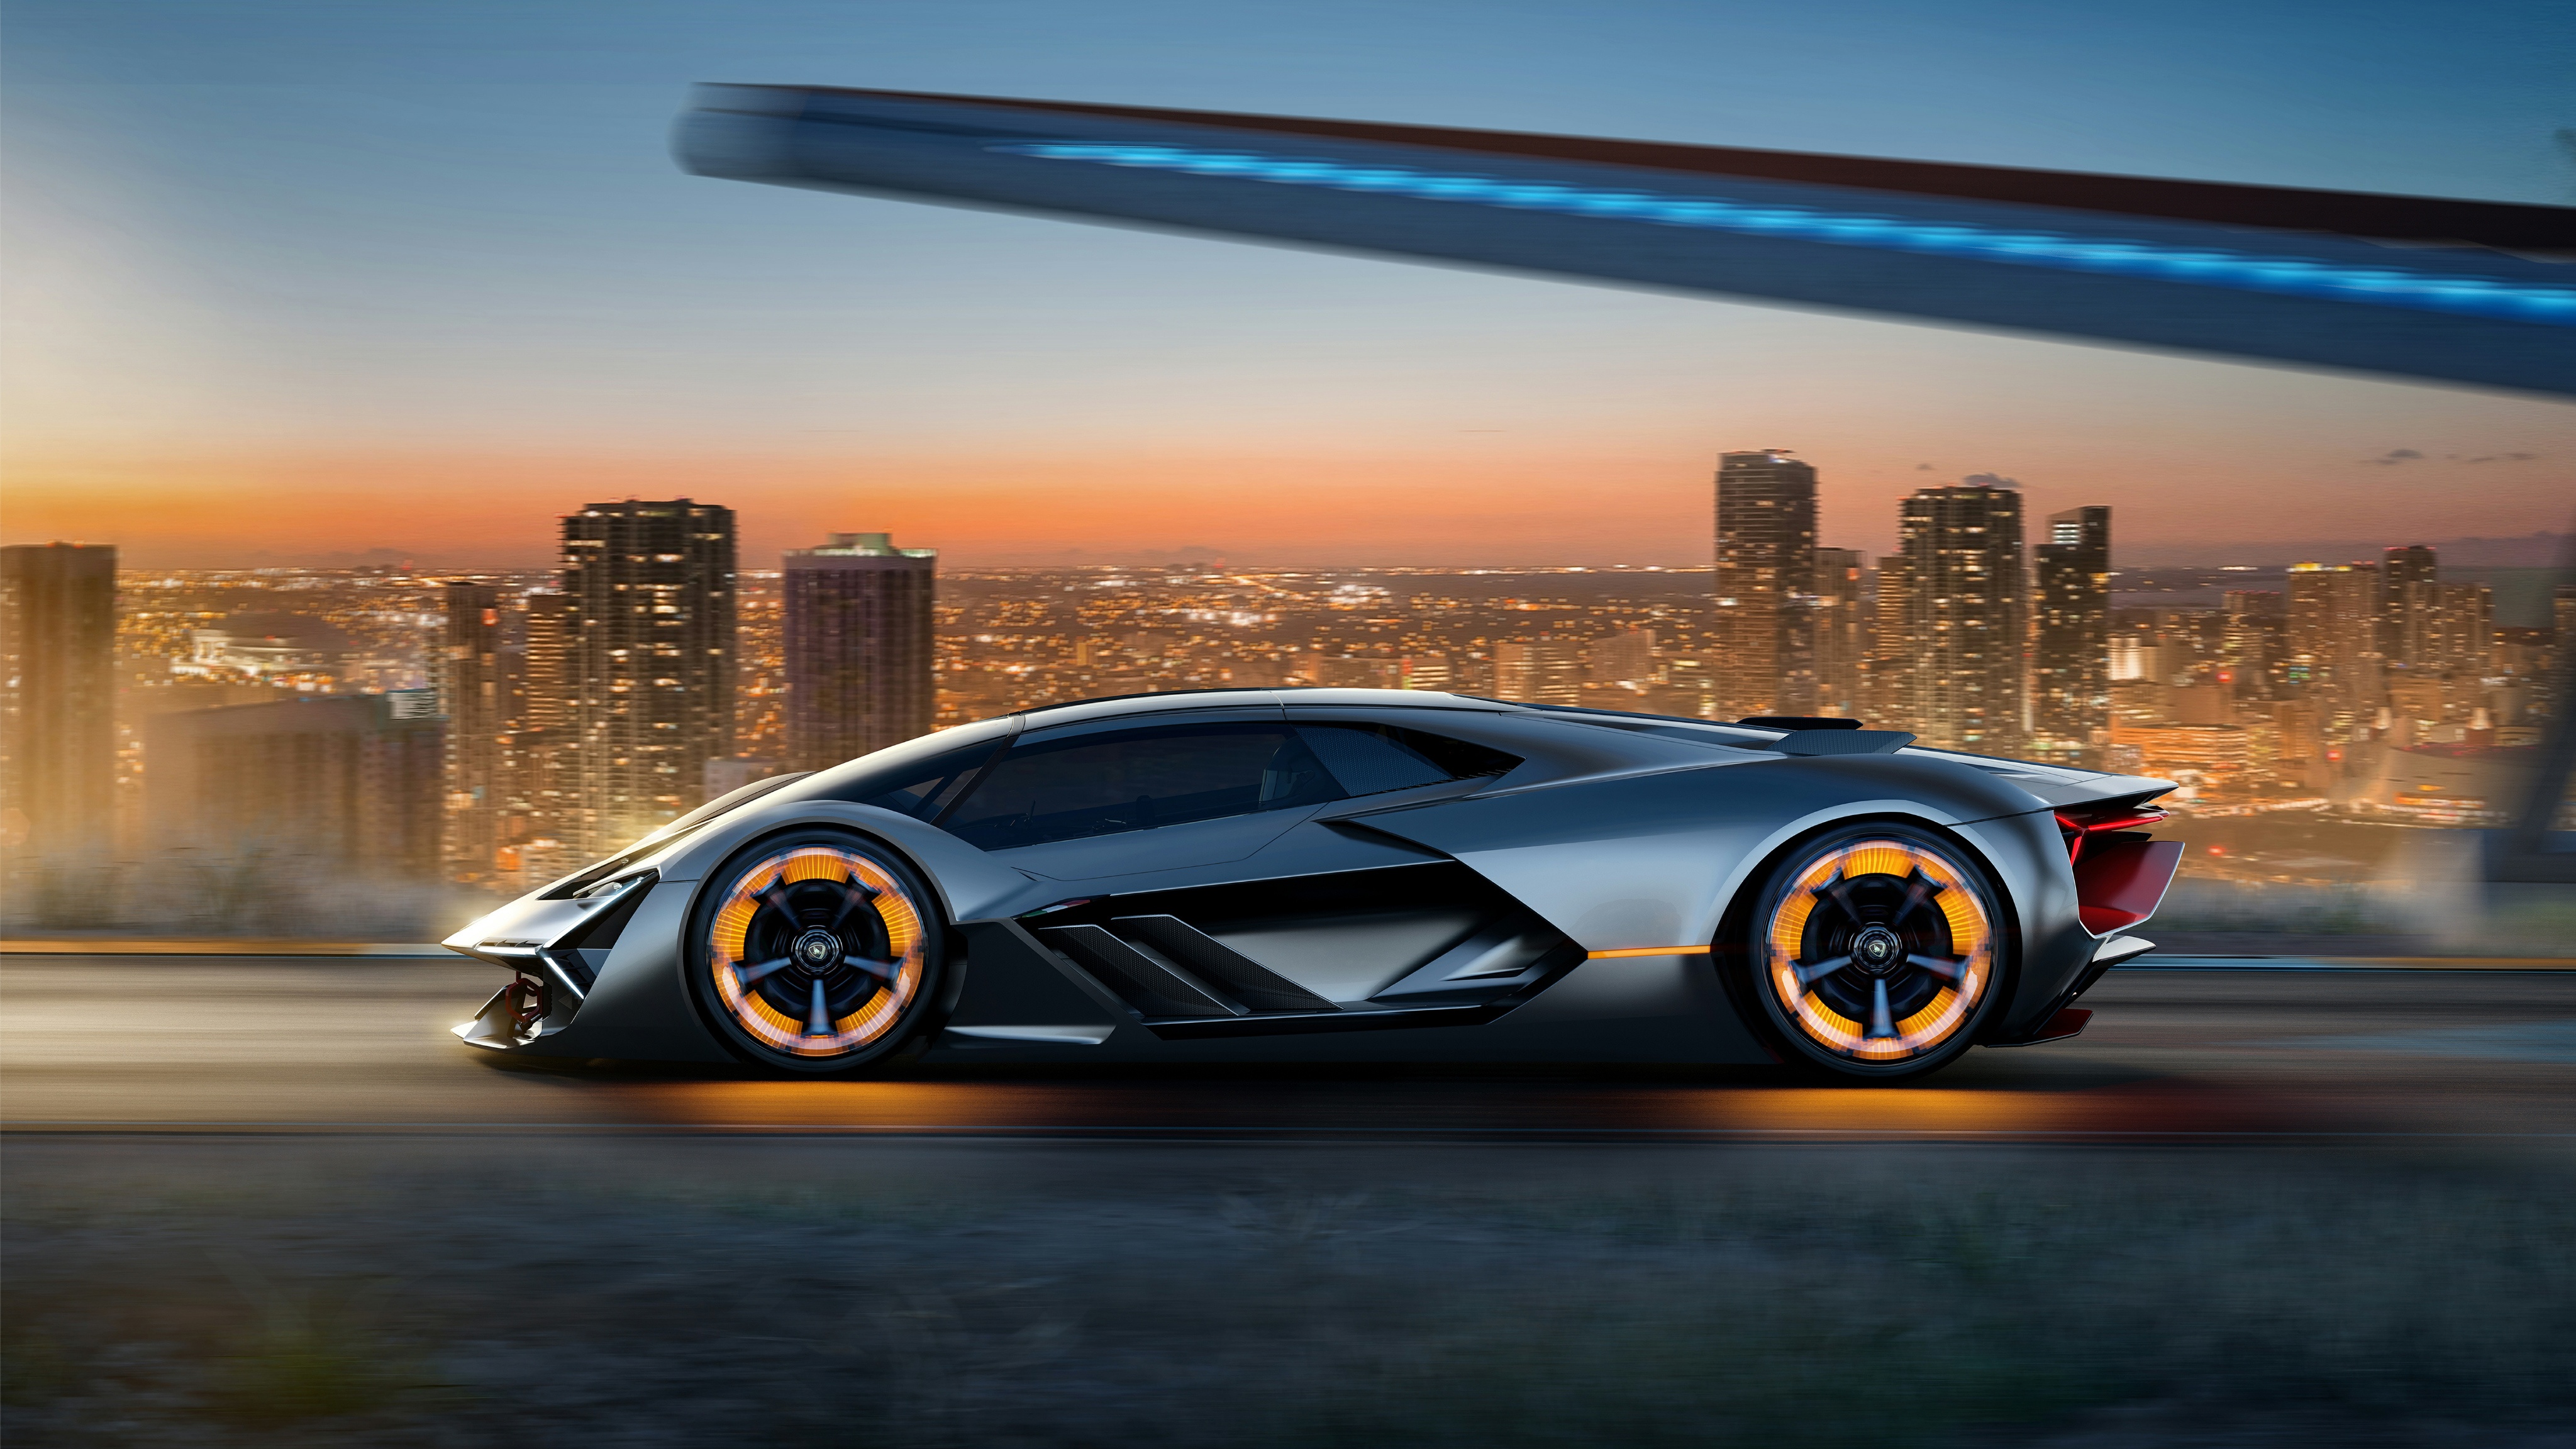 Télécharger des fonds d'écran Lamborghini Terzo Millennio HD